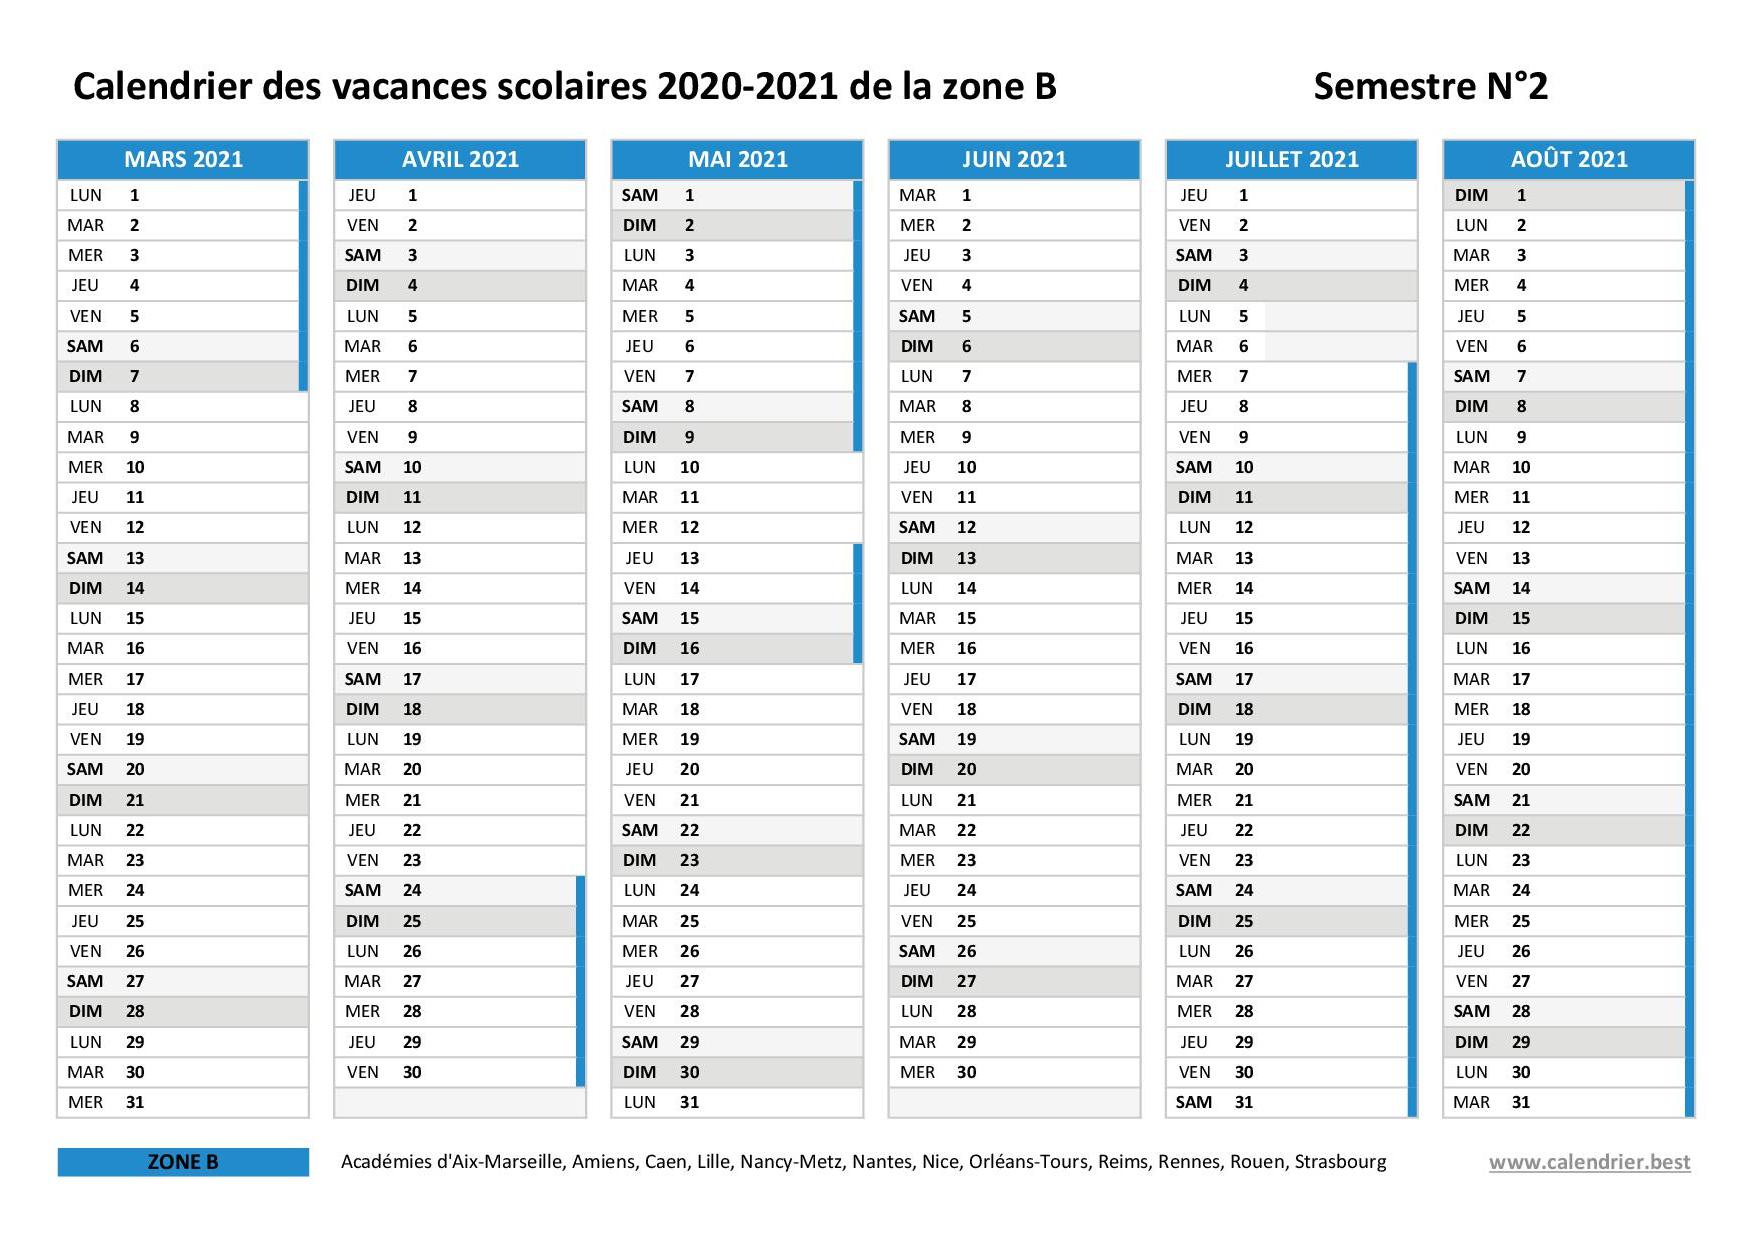 Calendrier Universitaire Lille 2 2021 2022 Vacances scolaires 2020 2021 Lille : dates et calendrier